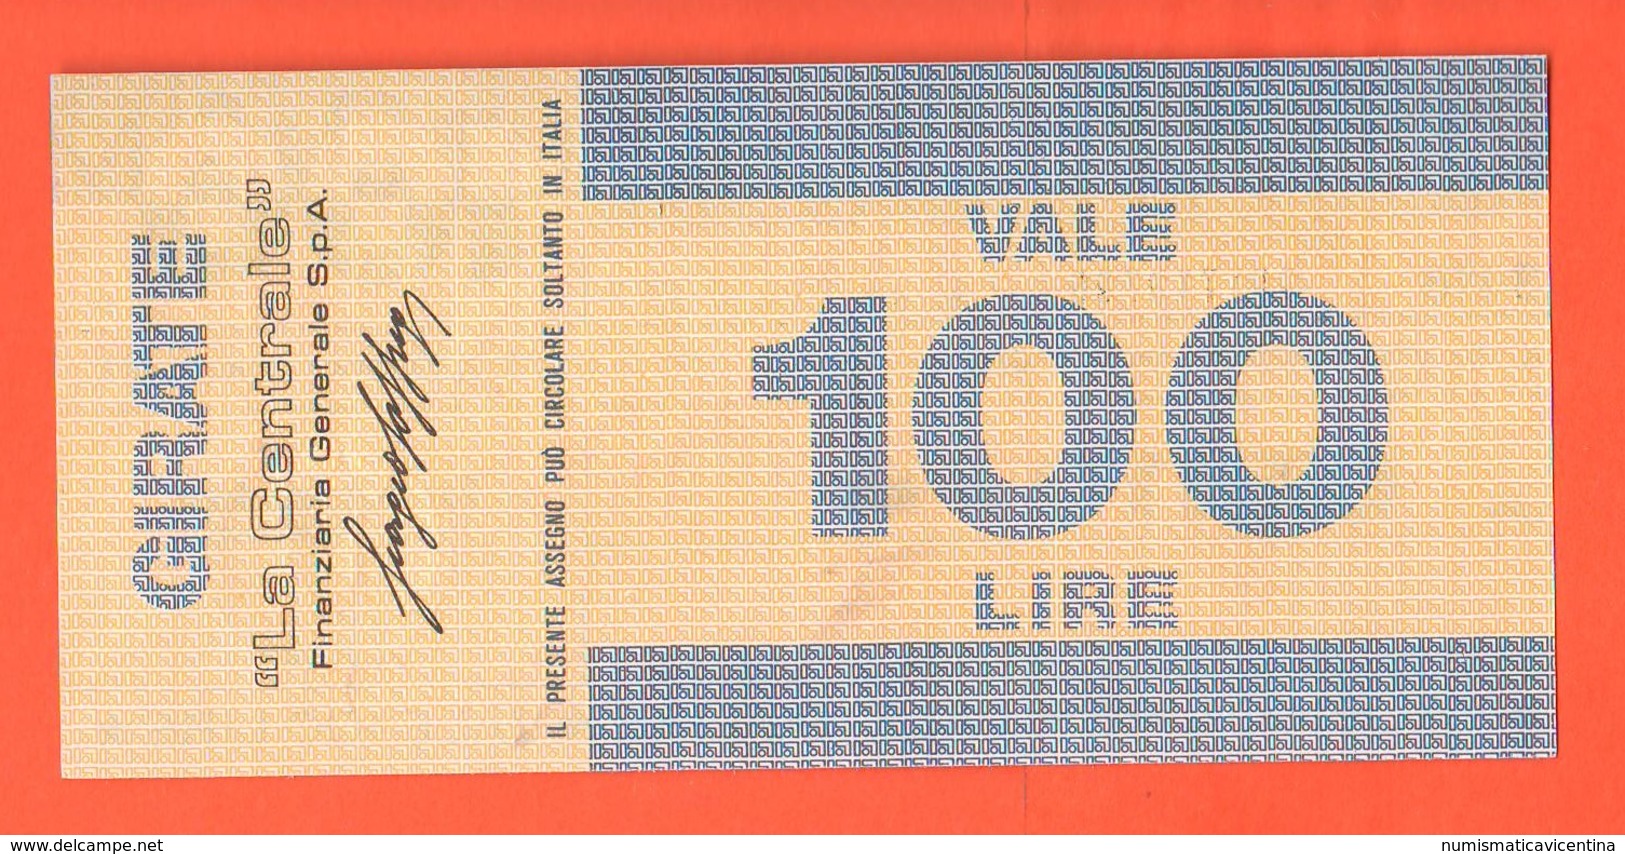 Miniassegno Banco Ambrosiano  100 Lire 1977 - [10] Cheques Y Mini-cheques